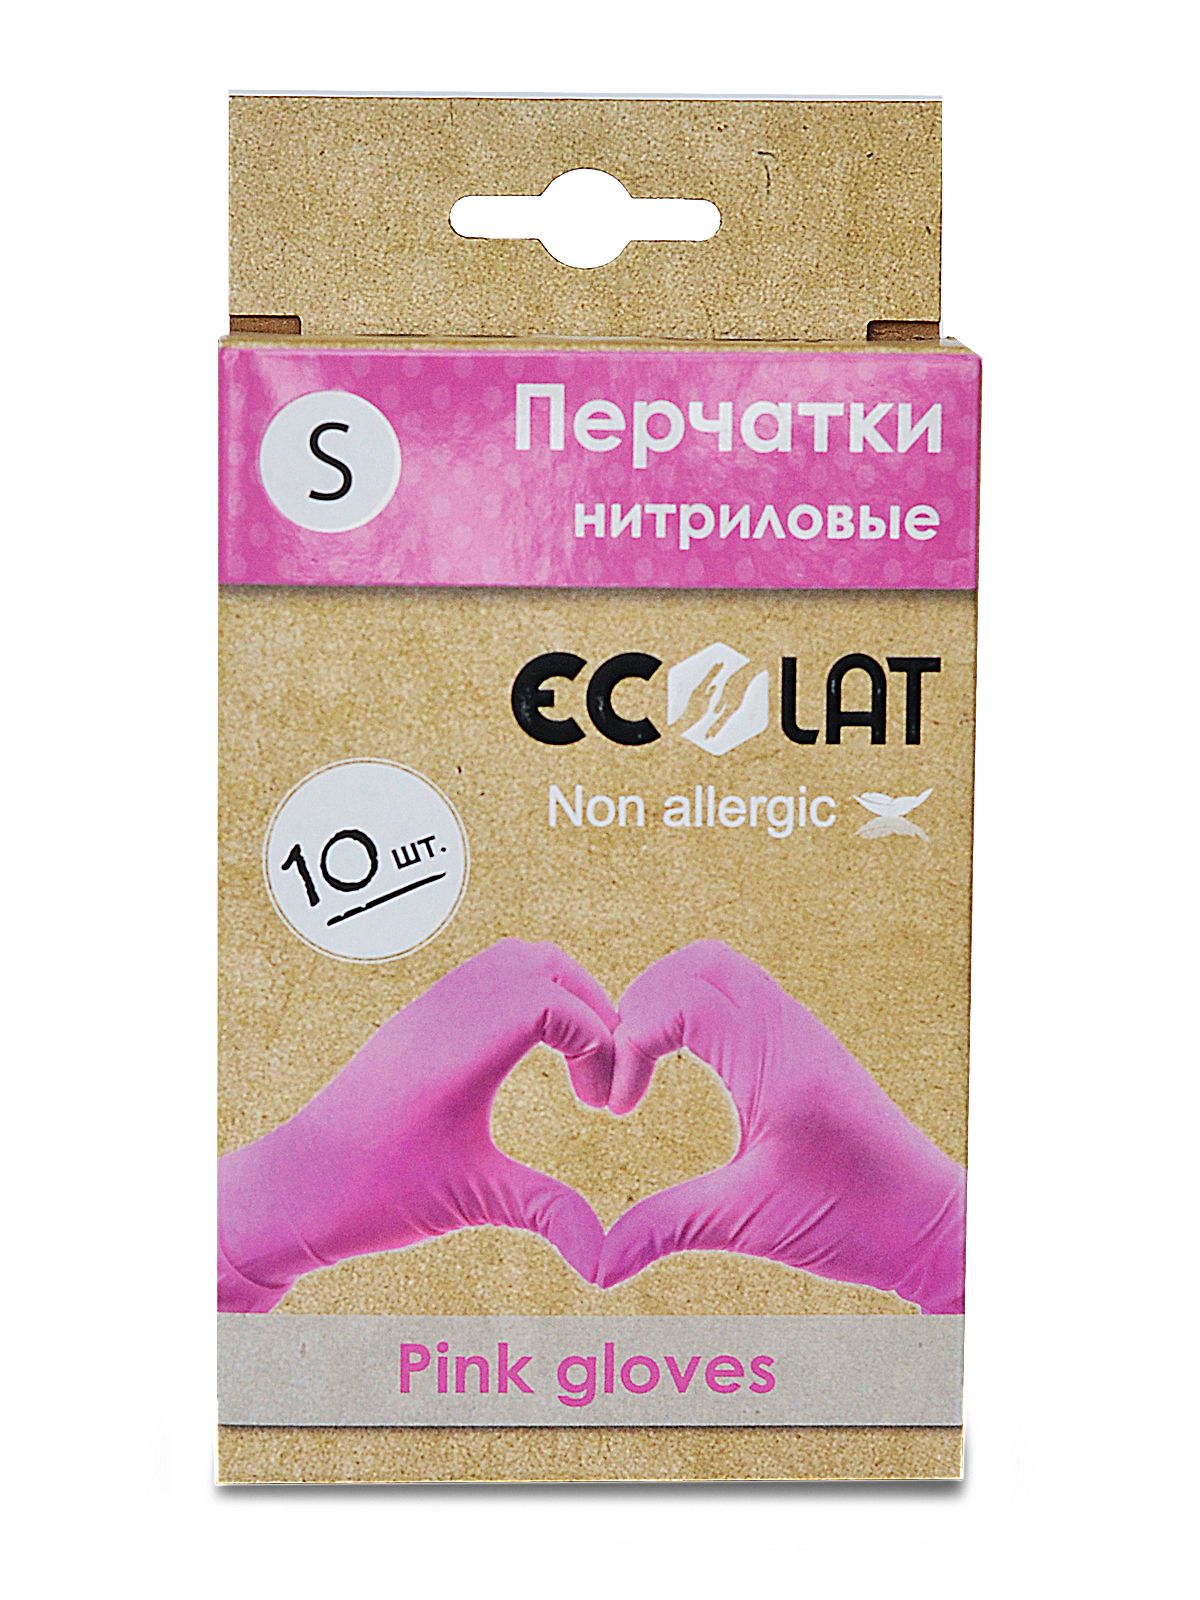 Купить Nitrile gloves, Перчатки медицинские розовые EcoLat, размер S, 10 шт